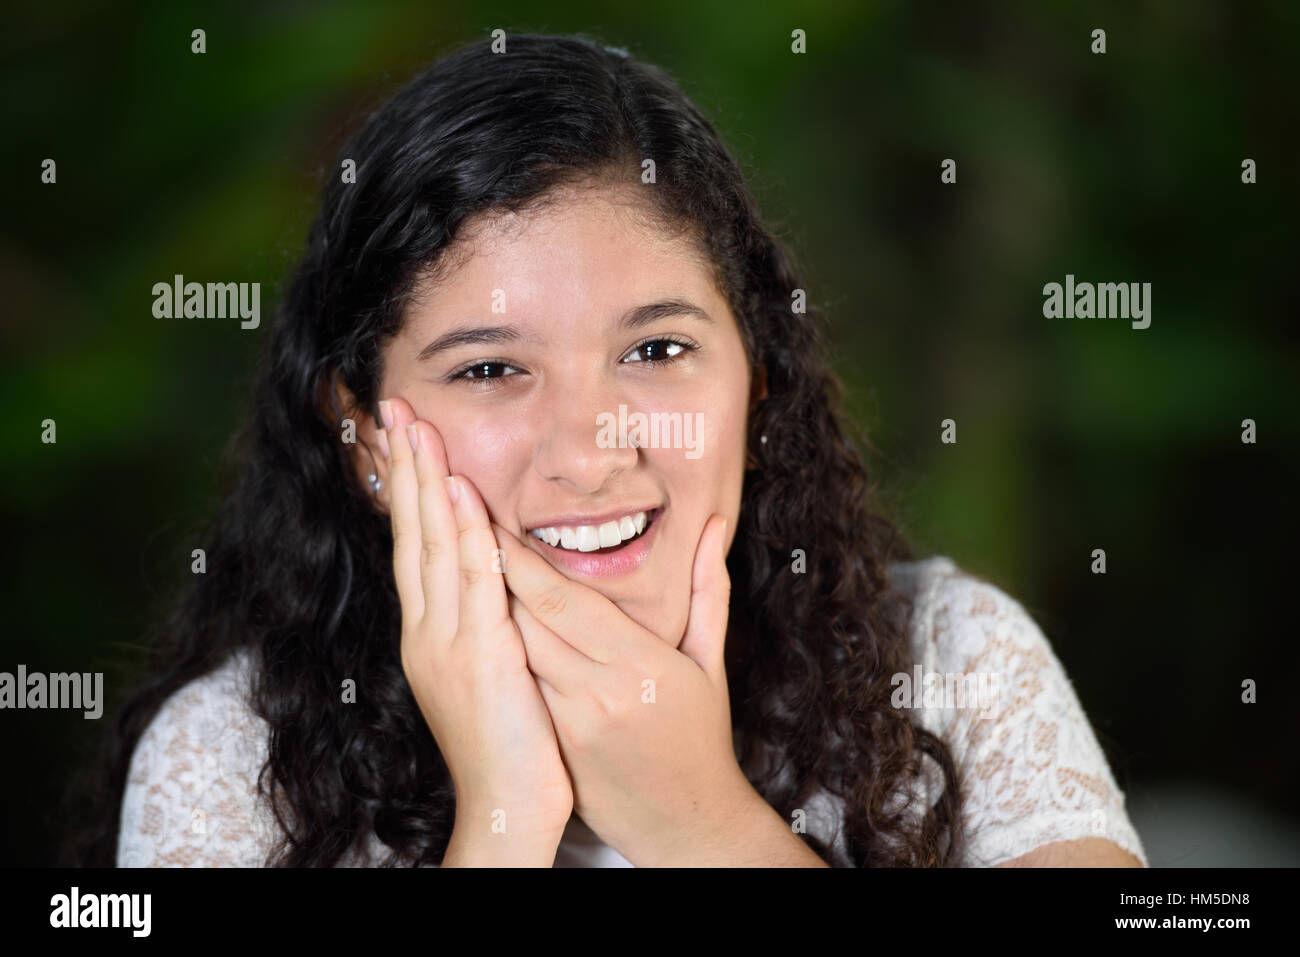 teenage girl with toothache Stock Photo